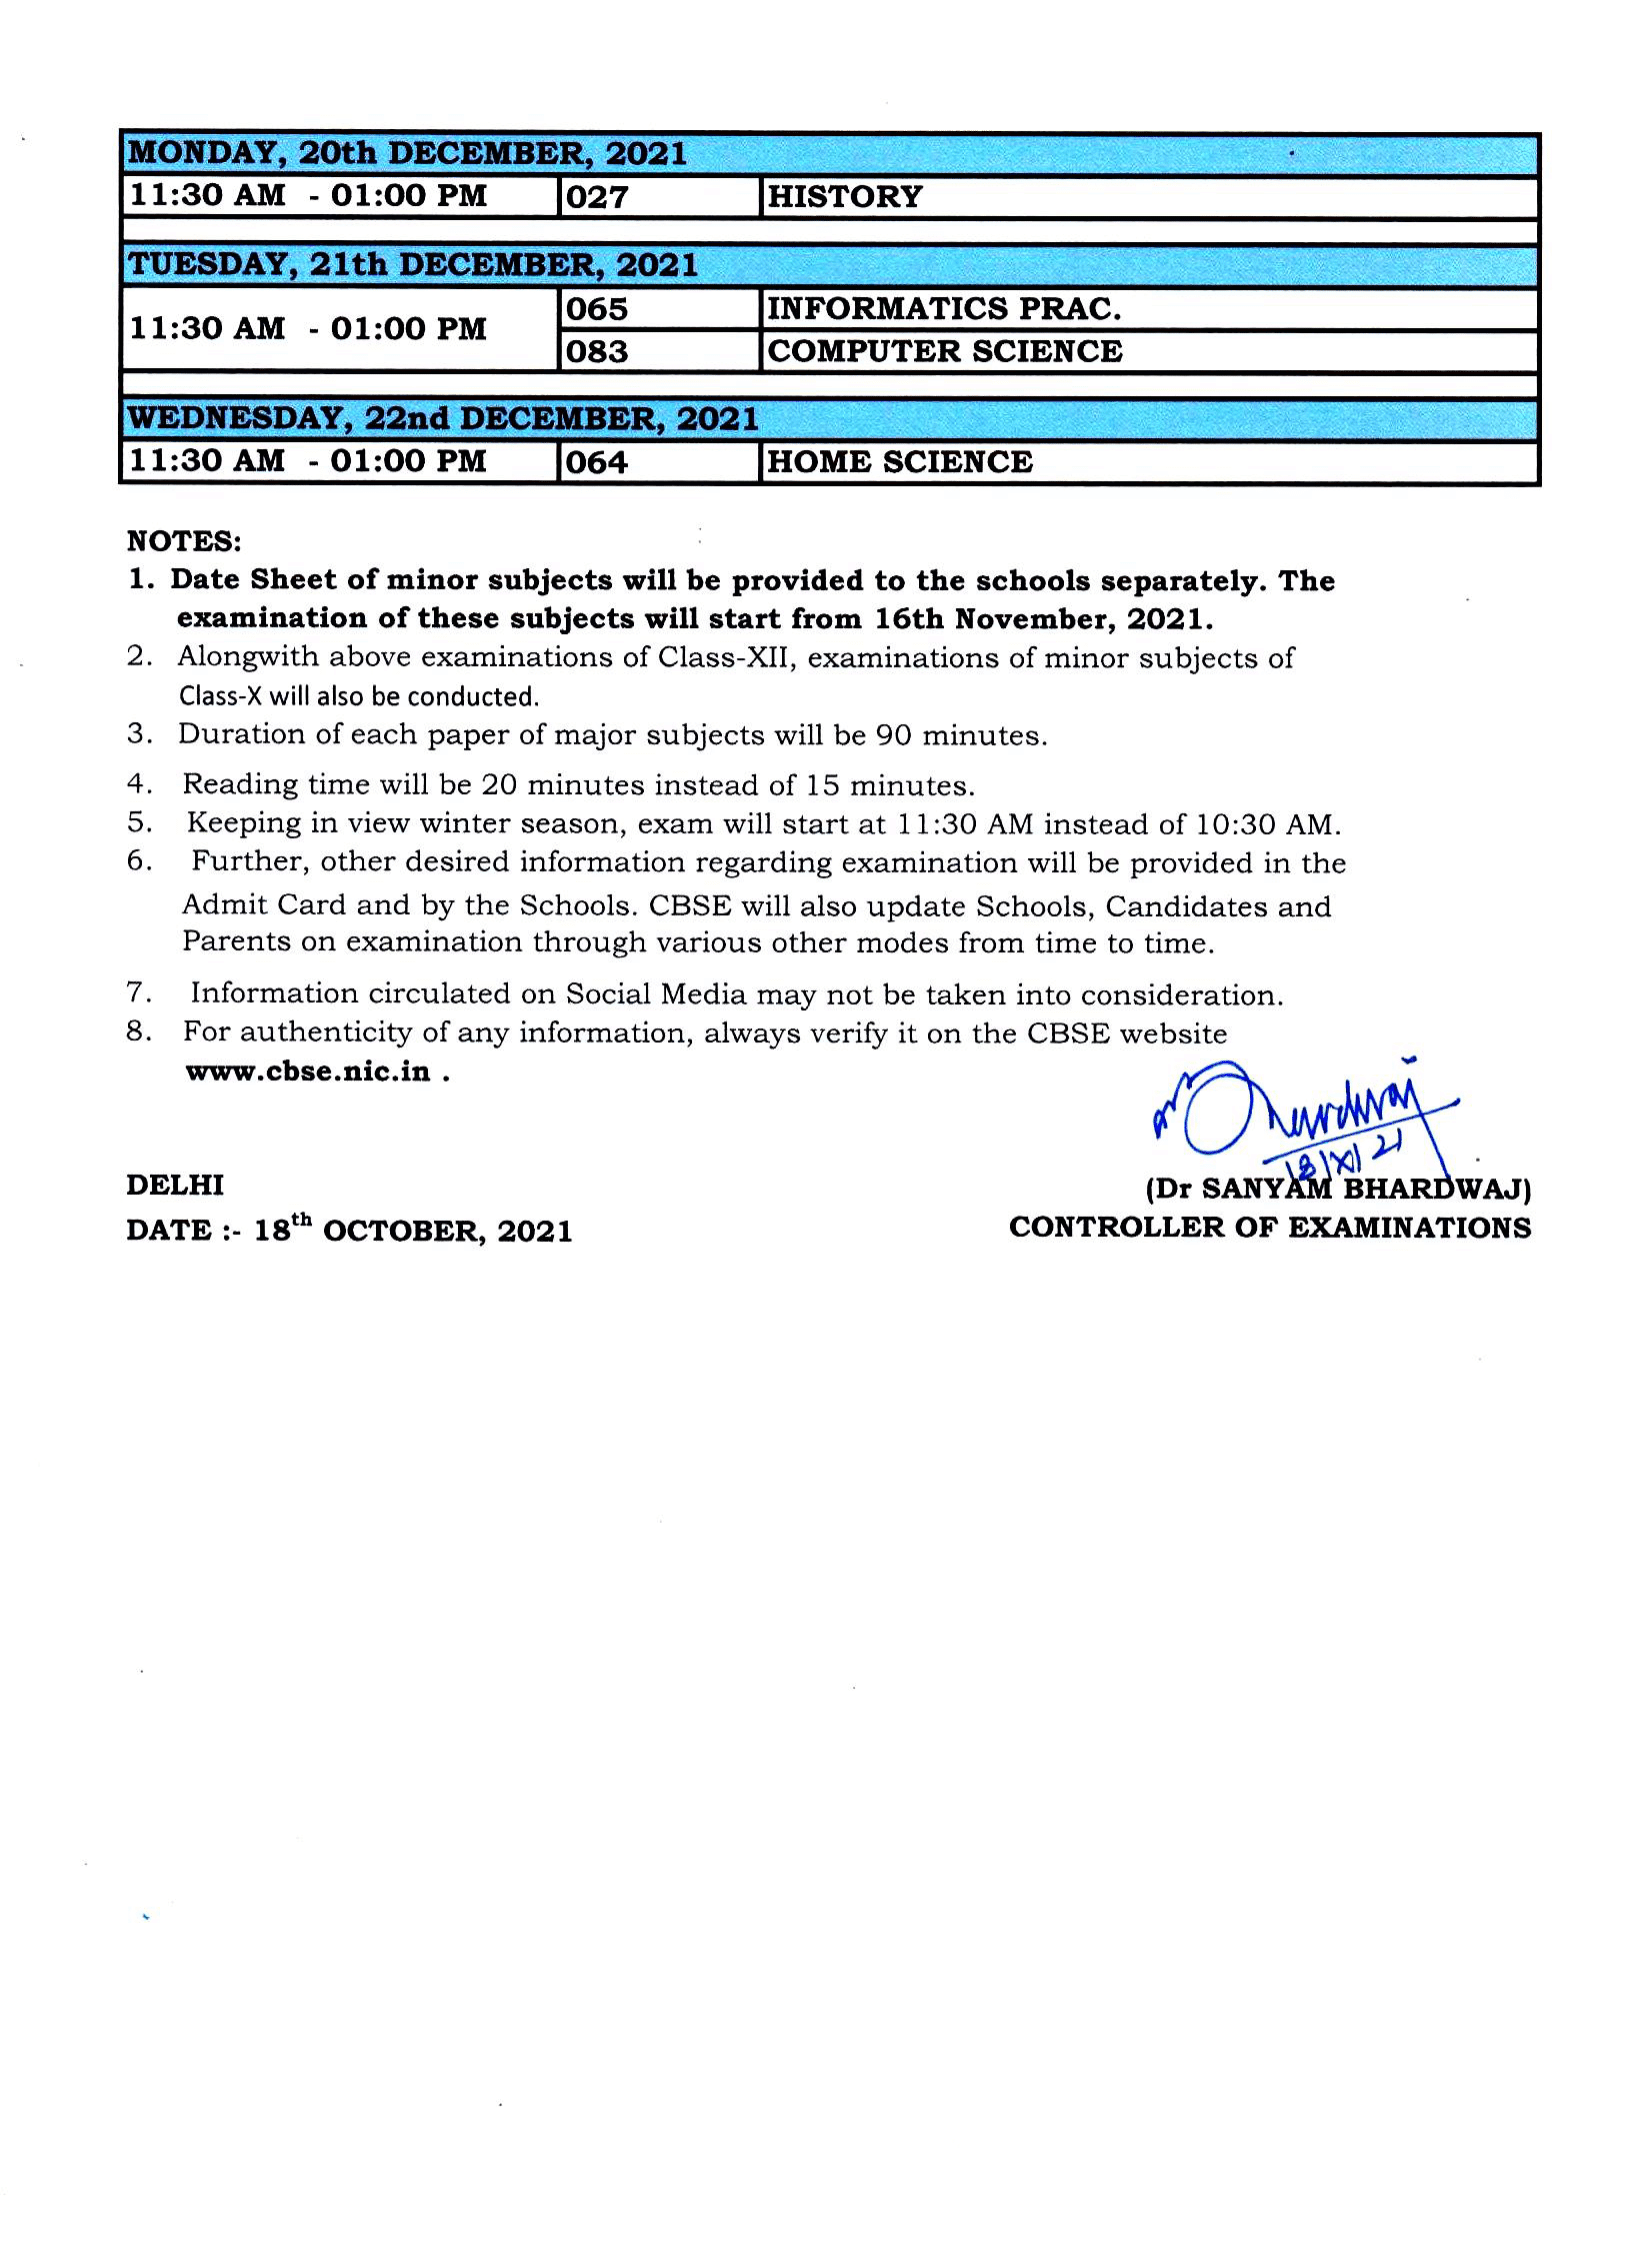 Date Sheet for Class 12 First Term Exams 2021